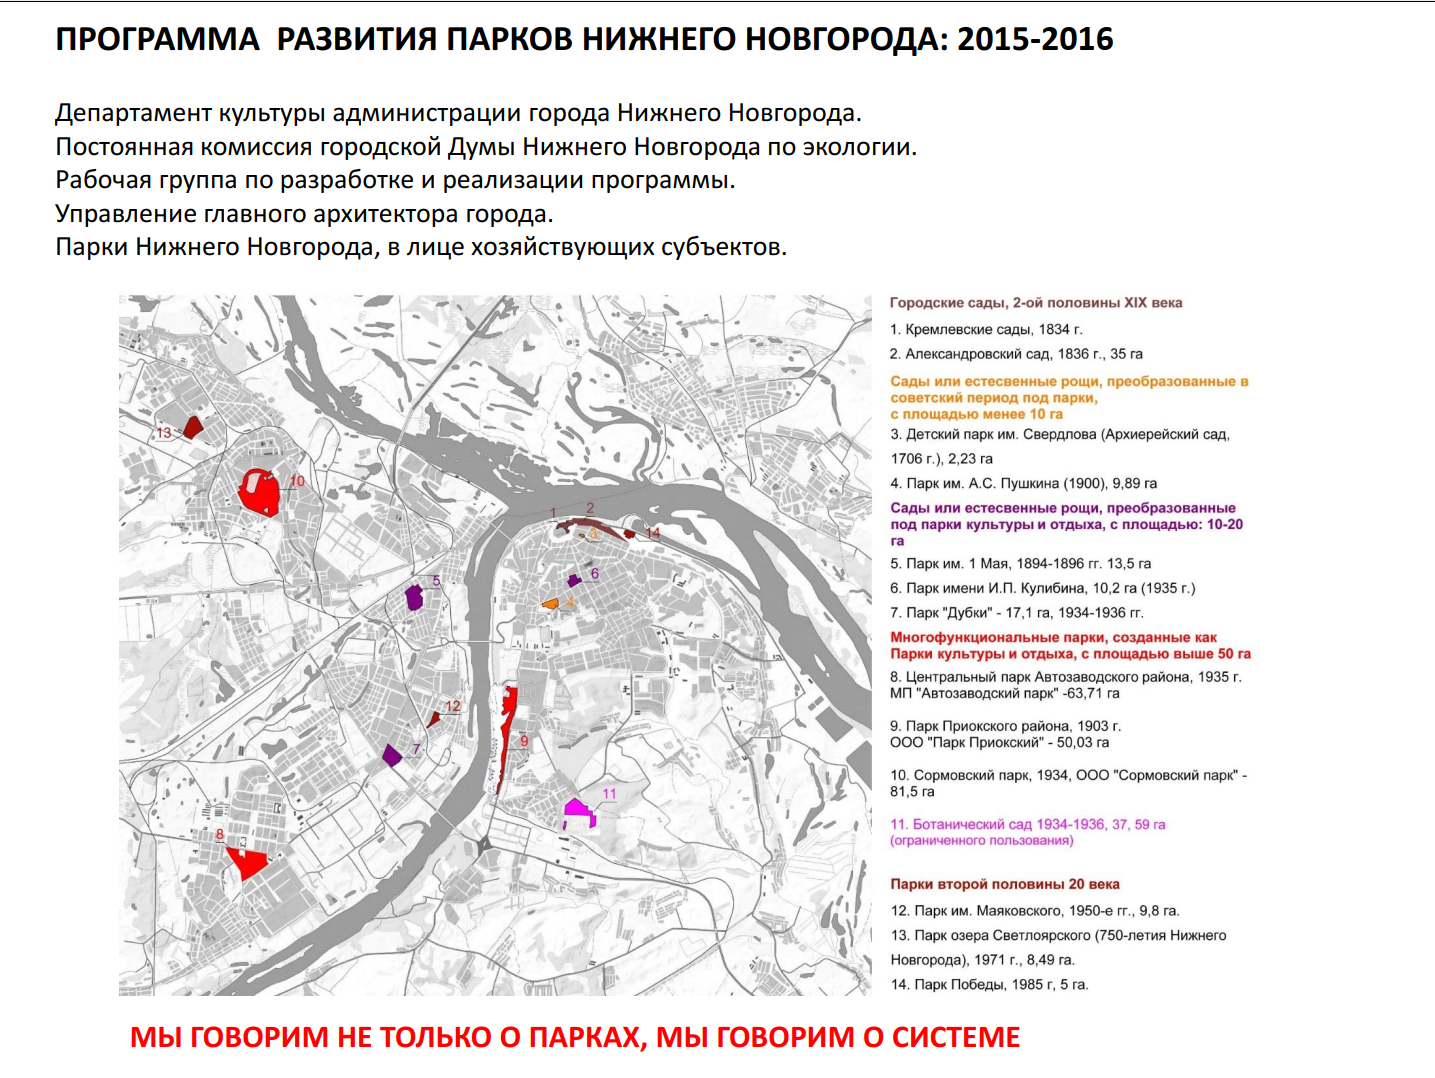 Перспективы развития градо-экологического каркаса в Нижнем Новгороде